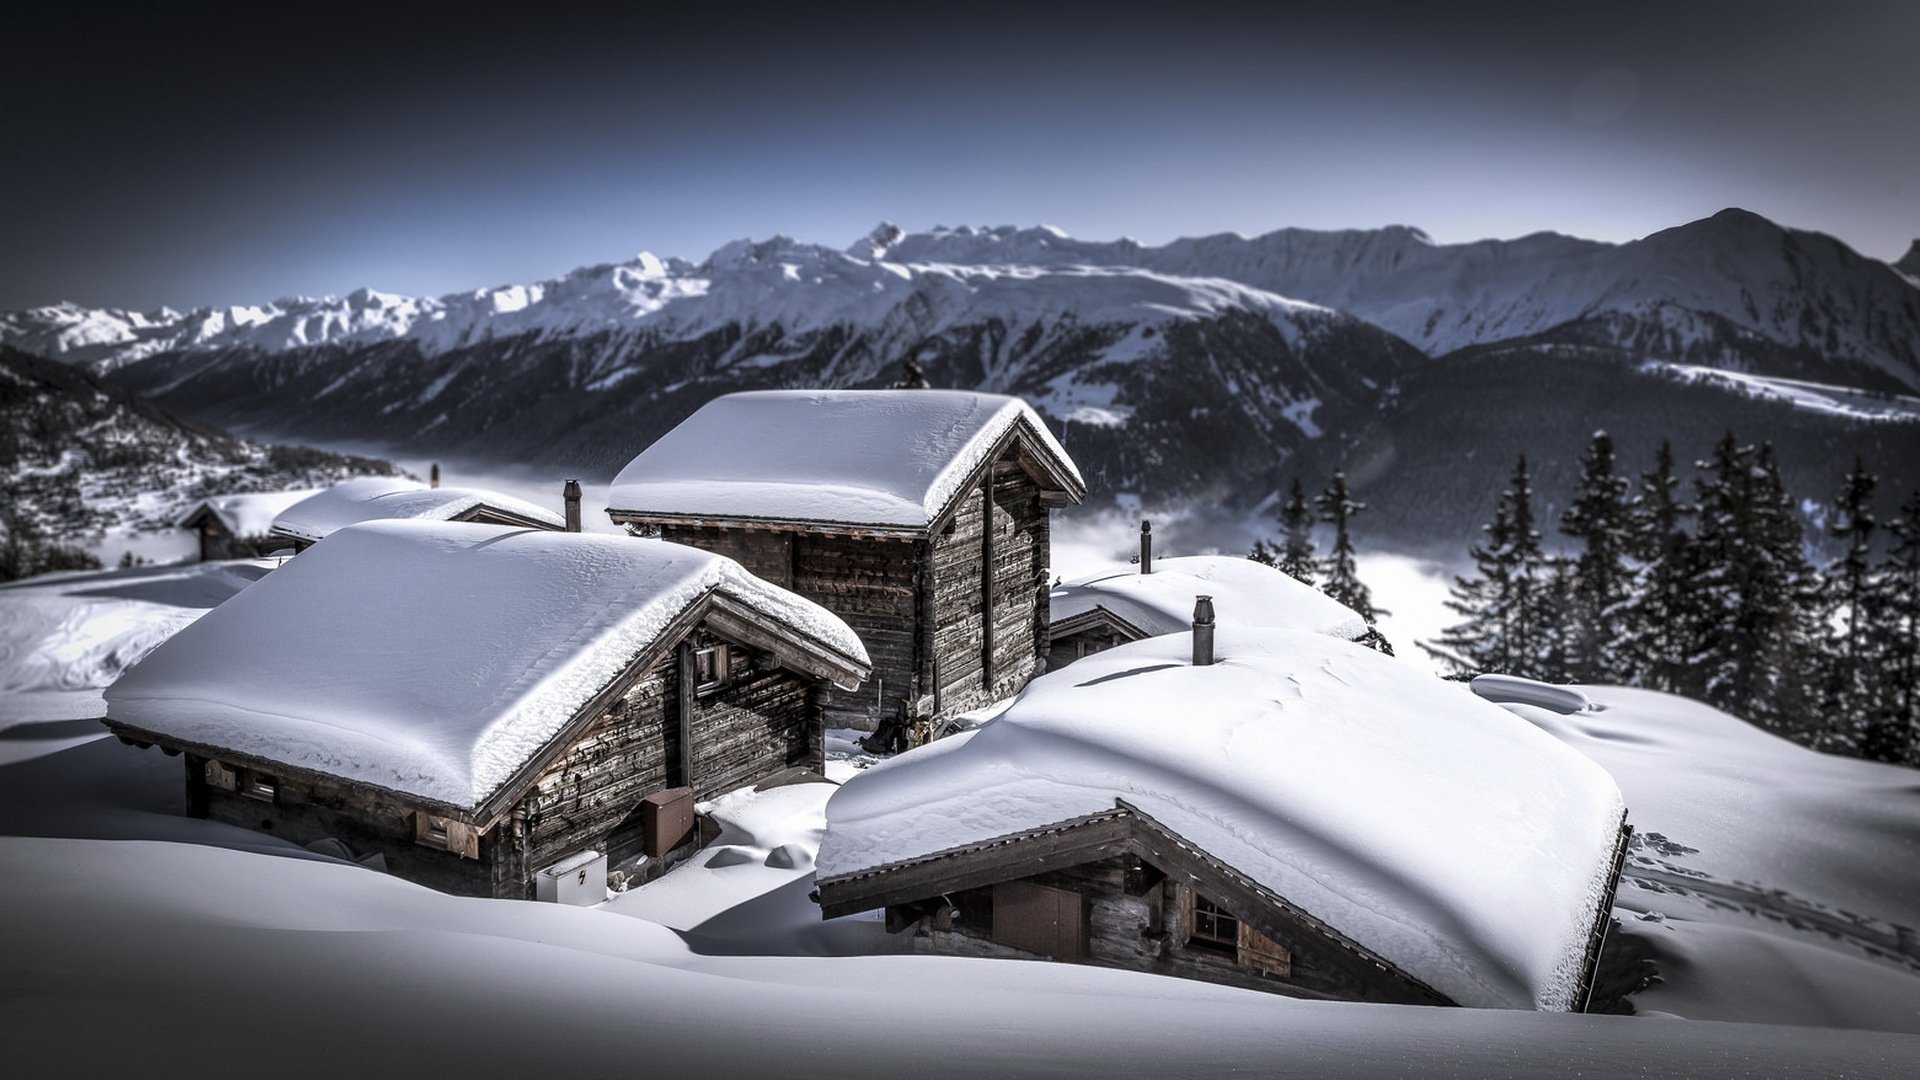 Горы снег дома. Дом в горах. Дом в снежных горах. Зима горы дома. Деревянный домик в заснеженных горах.